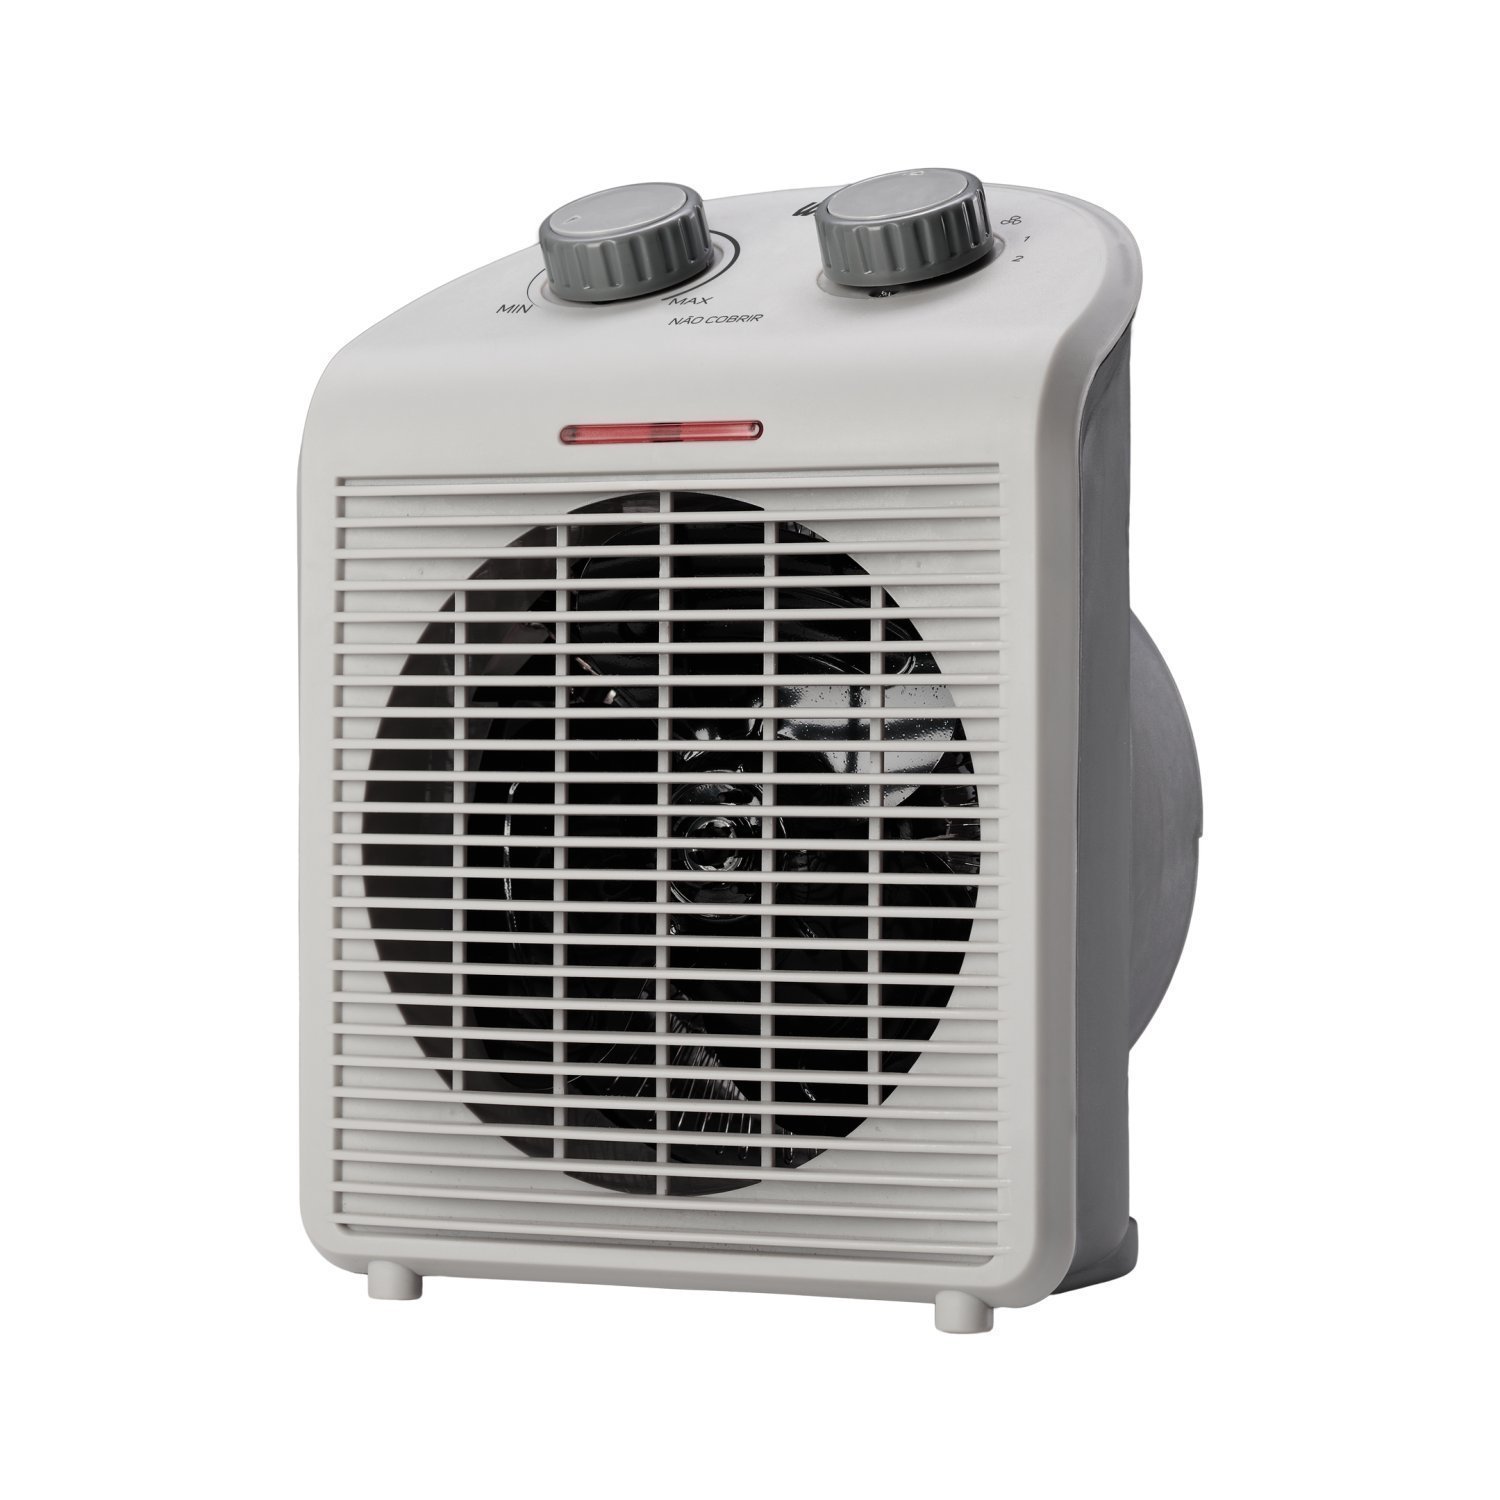 Aquecedor de Ar Portátil Air Heat 3 em 1 1500w 127v WAP Branco - 1